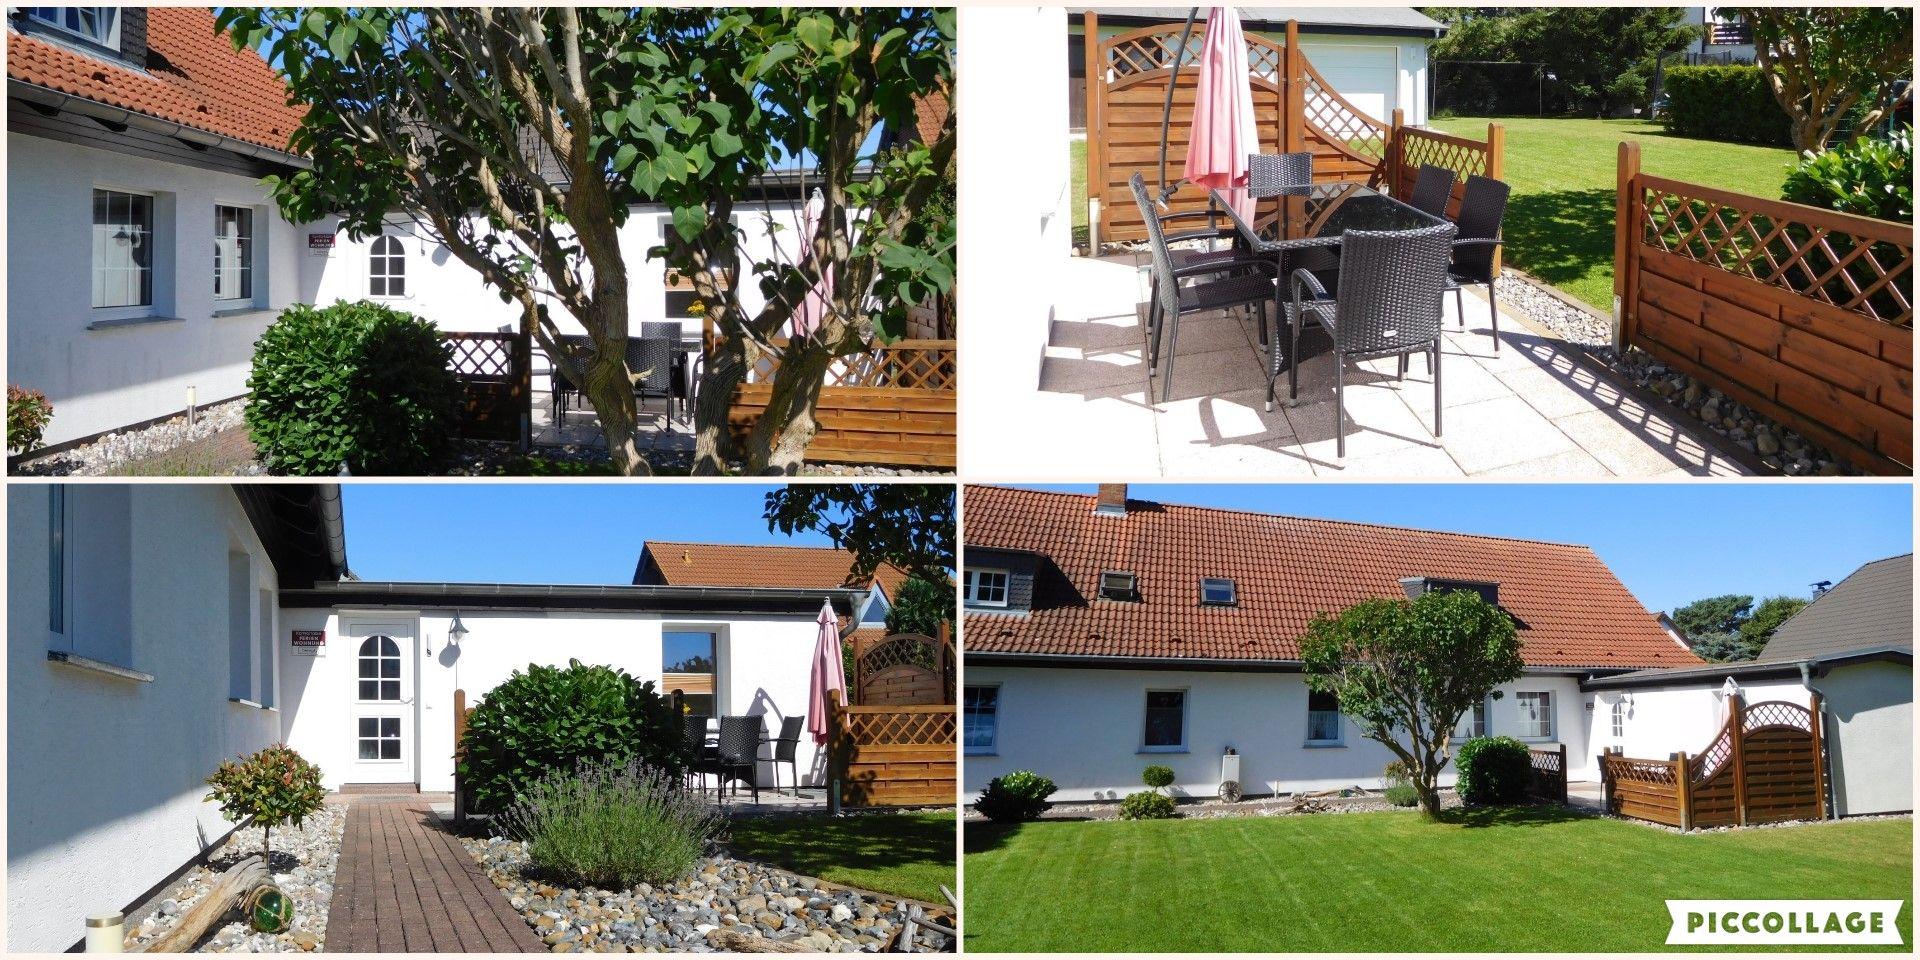 Ferienwohnung für 5 Personen ca. 85 m² i Ferienhaus in Deutschland